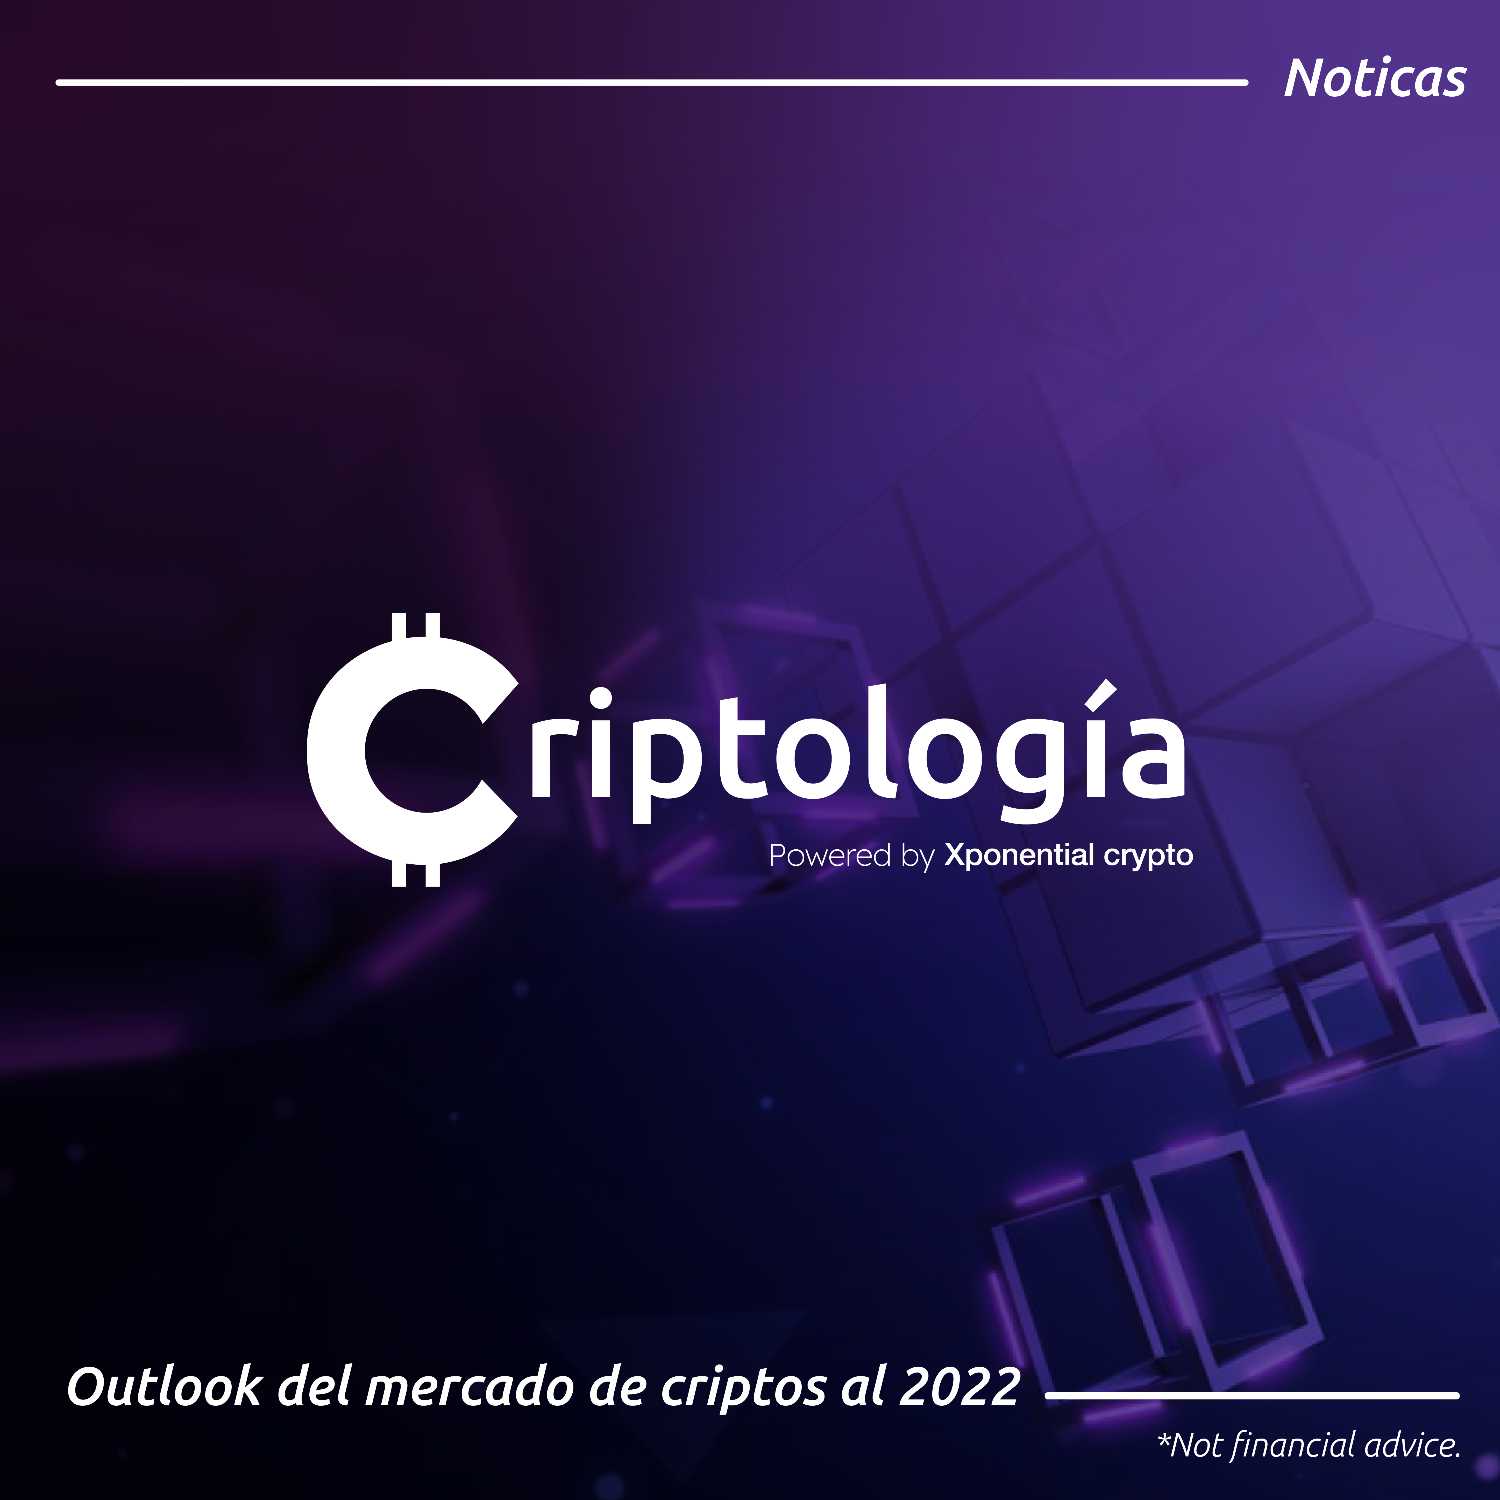 Noticias - Outlook del mercado de criptos al 2022